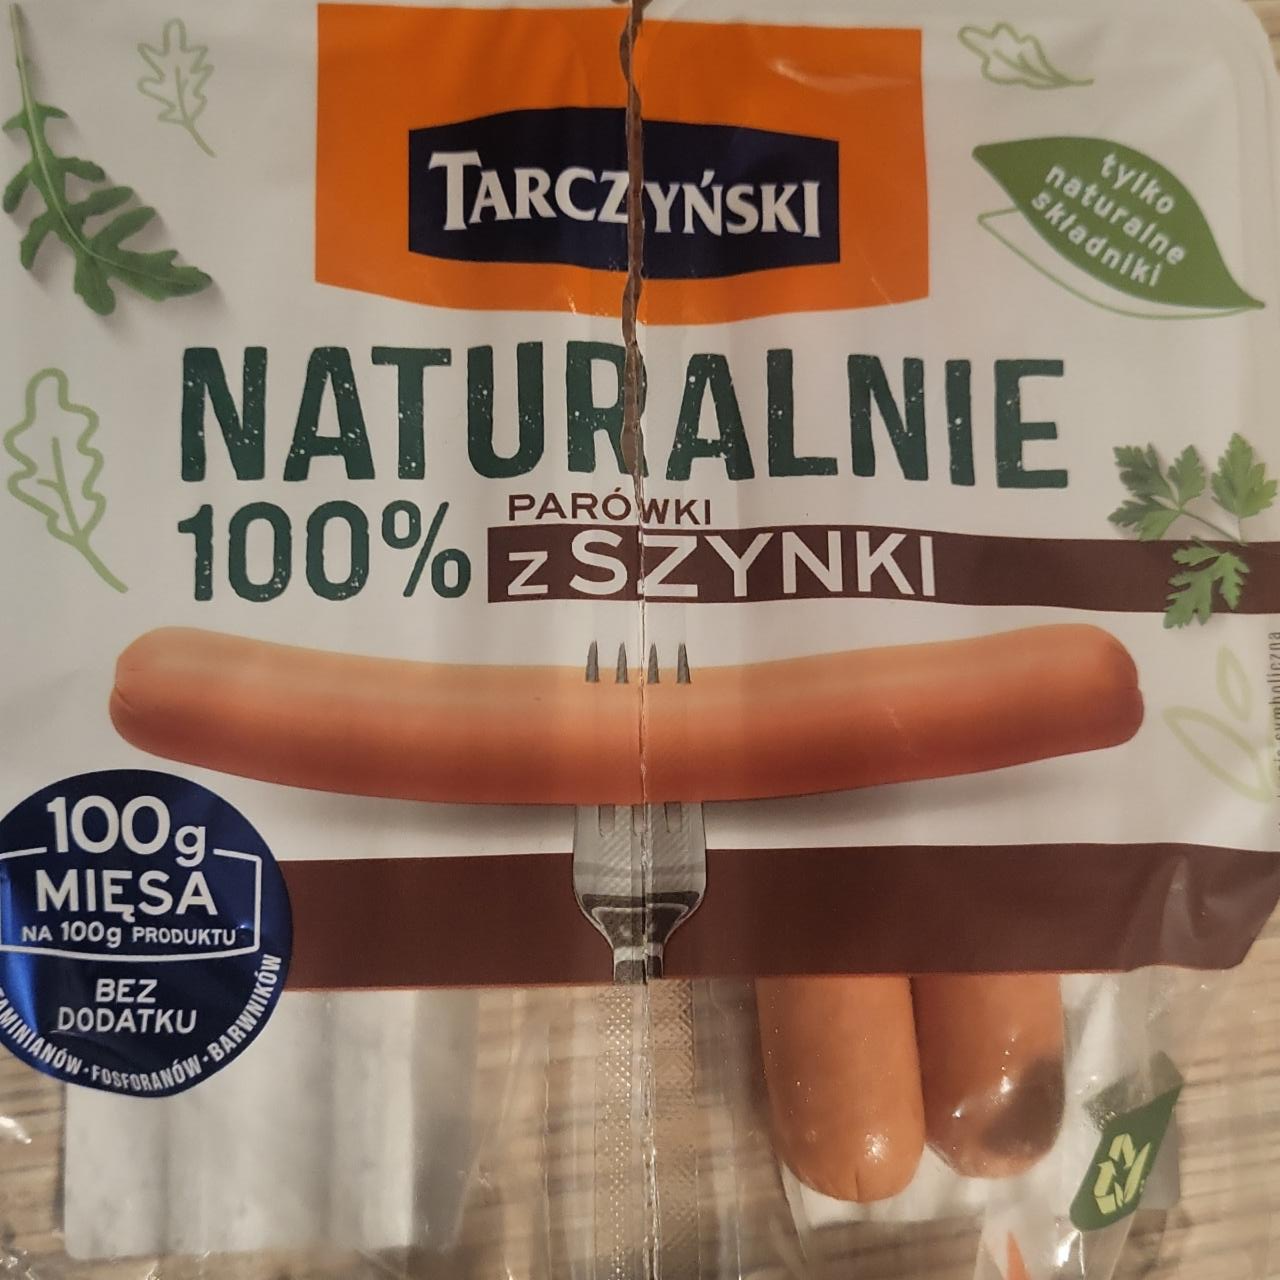 Fotografie - Naturalnie Parówki 100% z szynki Tarczyński